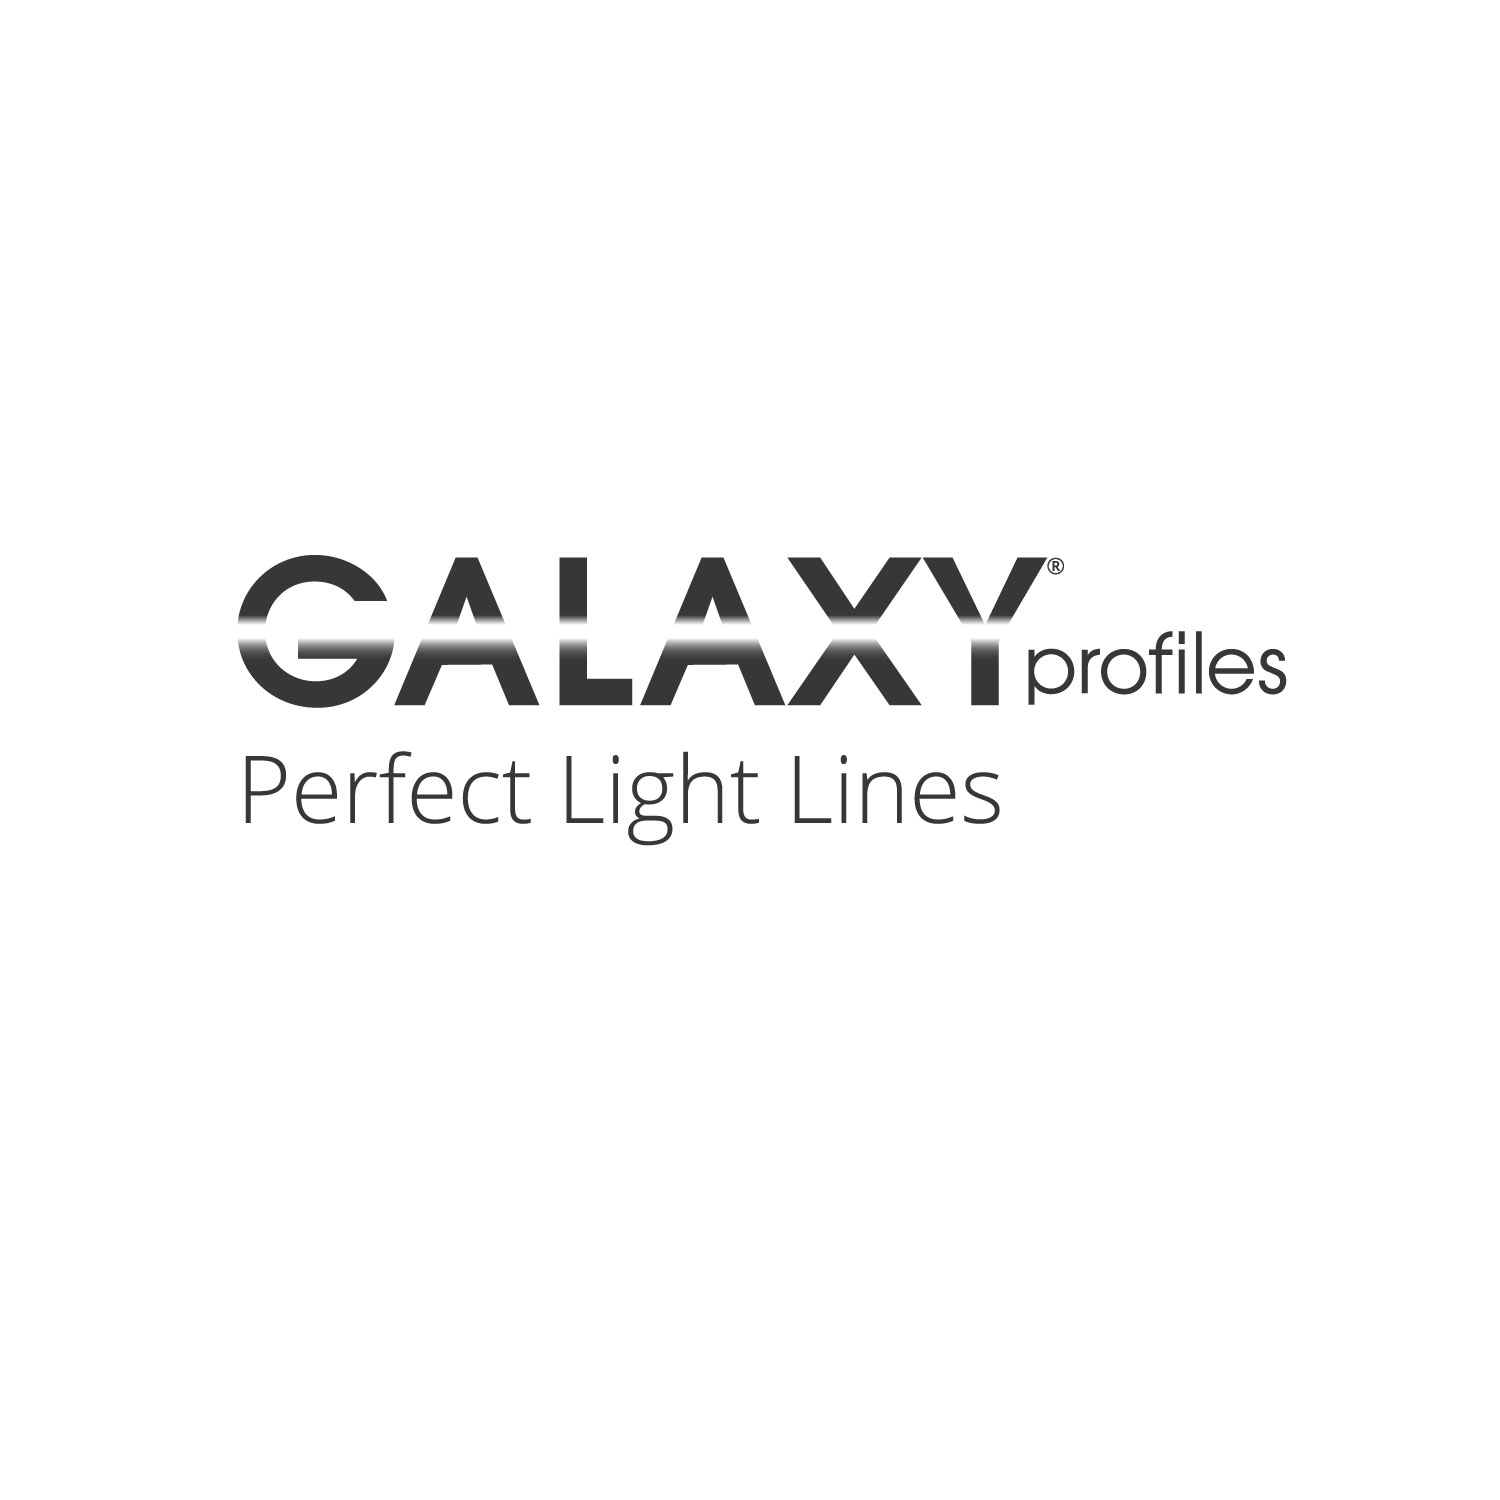 GALAXY® profiles - Katalog 2022/23 - Englisch - Deutsch